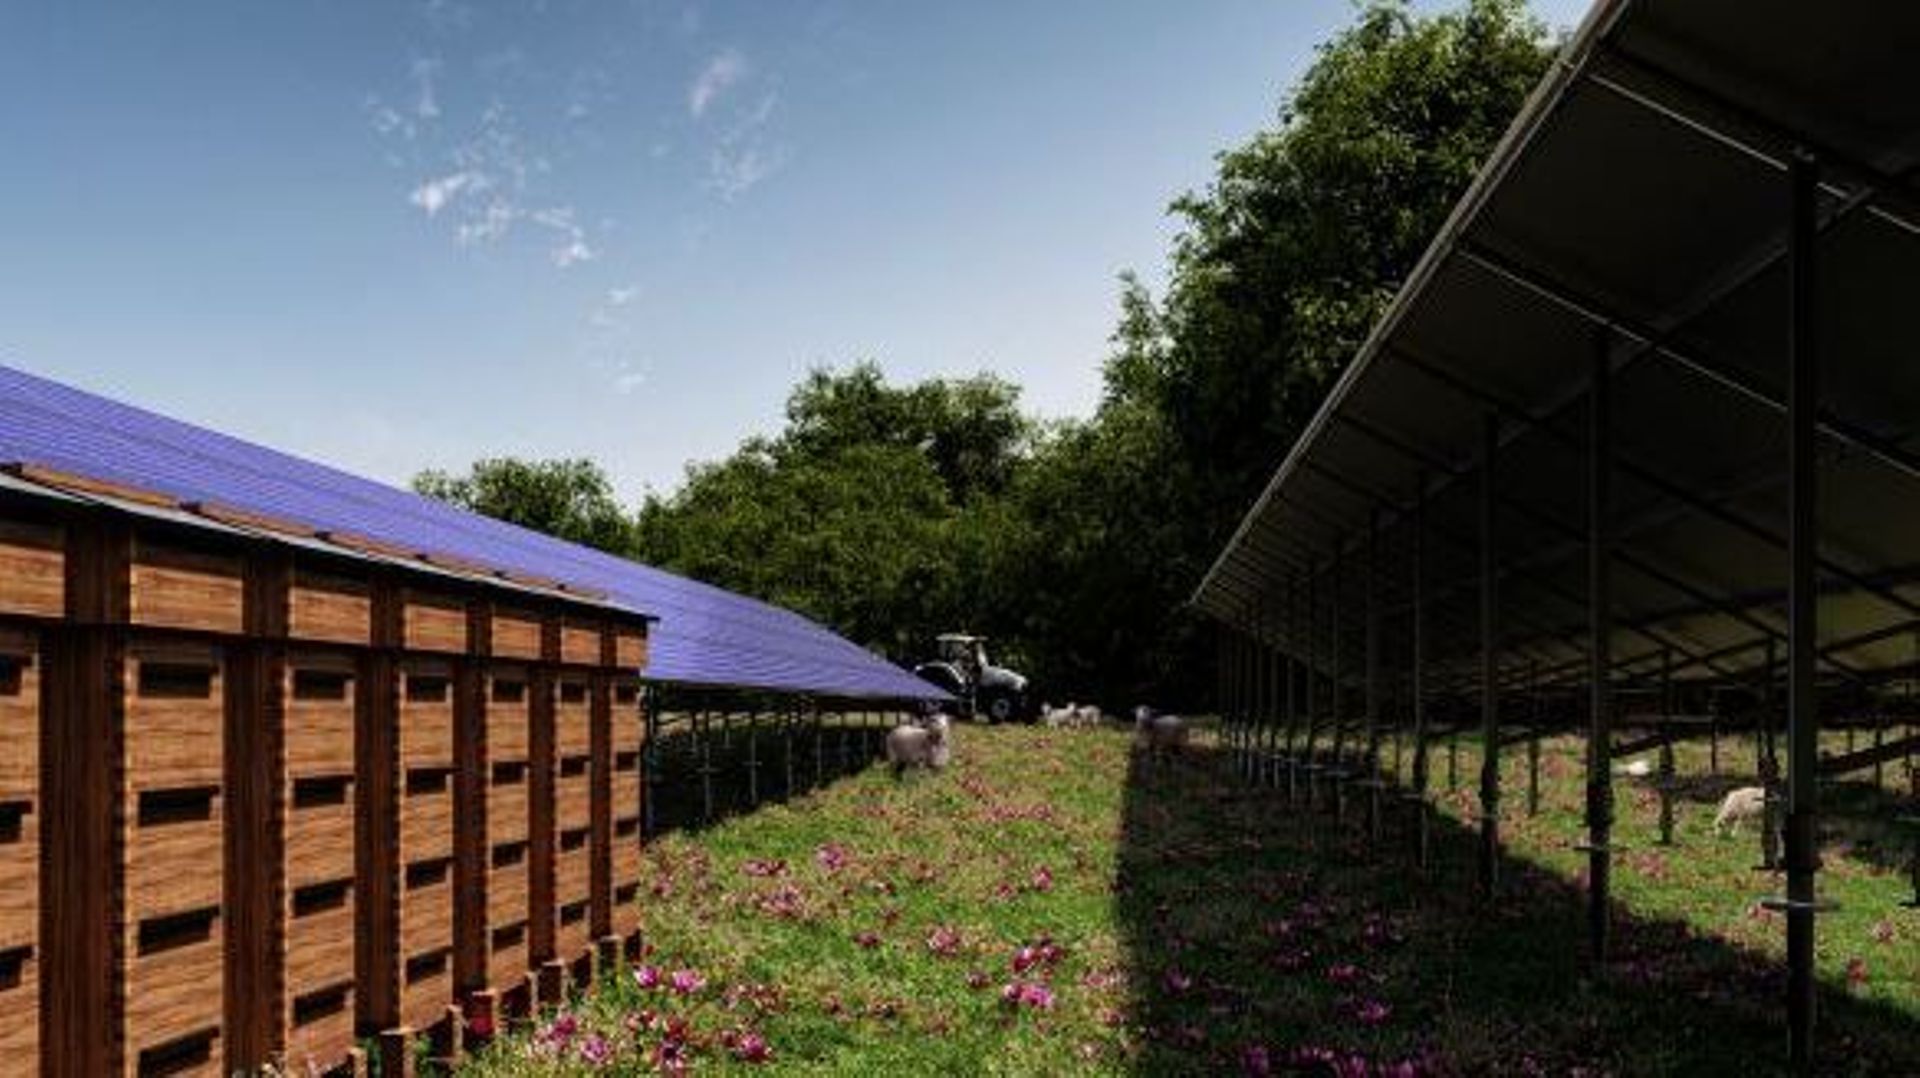 300 brebis pourraient bientôt pâturer sous 20.000 panneaux photovoltaïques.